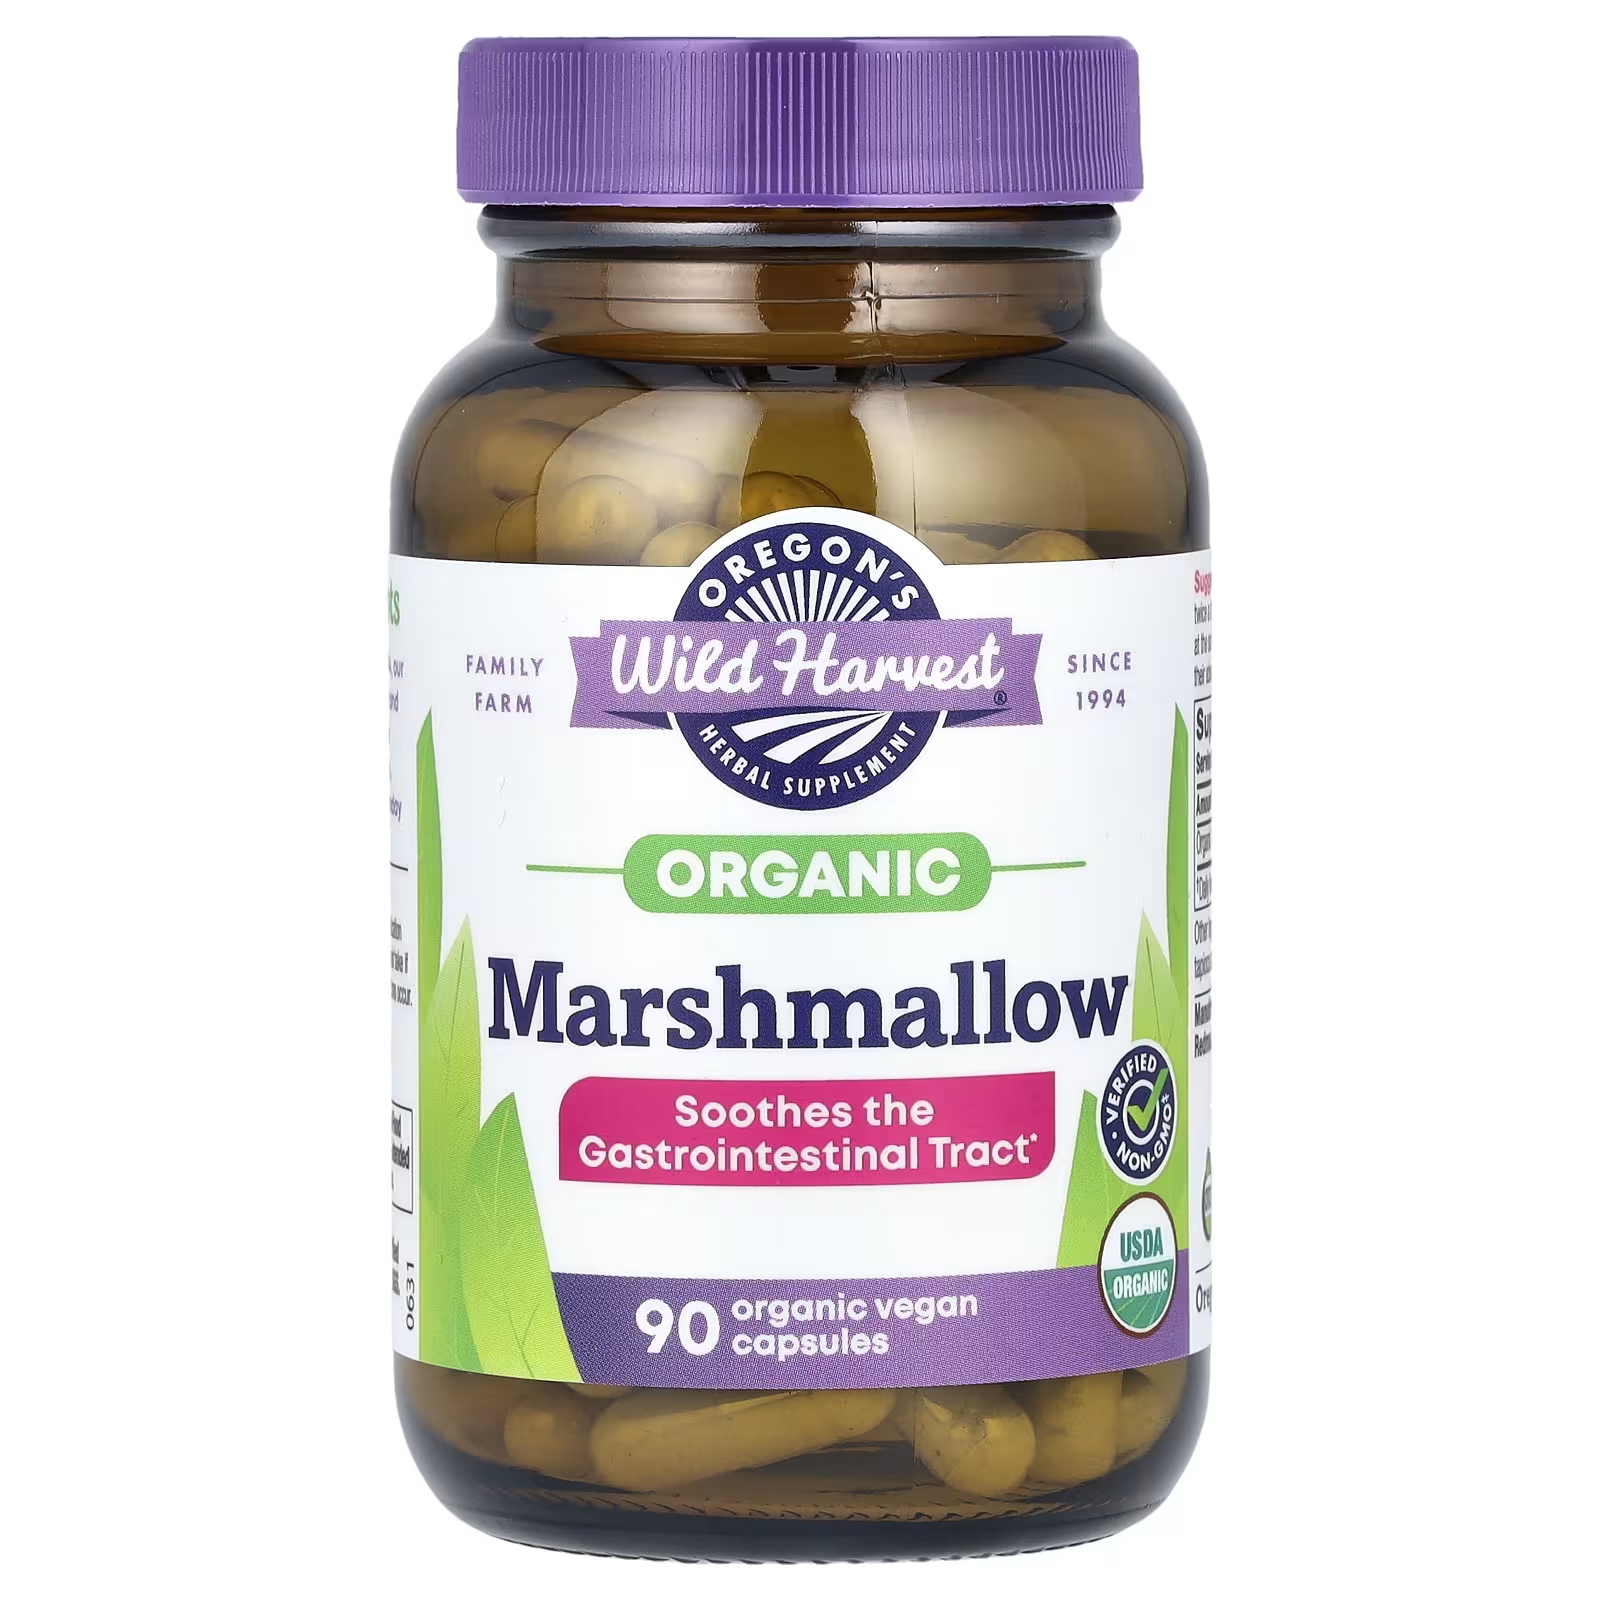 Травяная добавка Oregons Wild Harvest Organic Marshmallow, 90 органических веганских капсул семенова надежда алексеевна желудочно кишечный тракт функции болезни и оздоровление